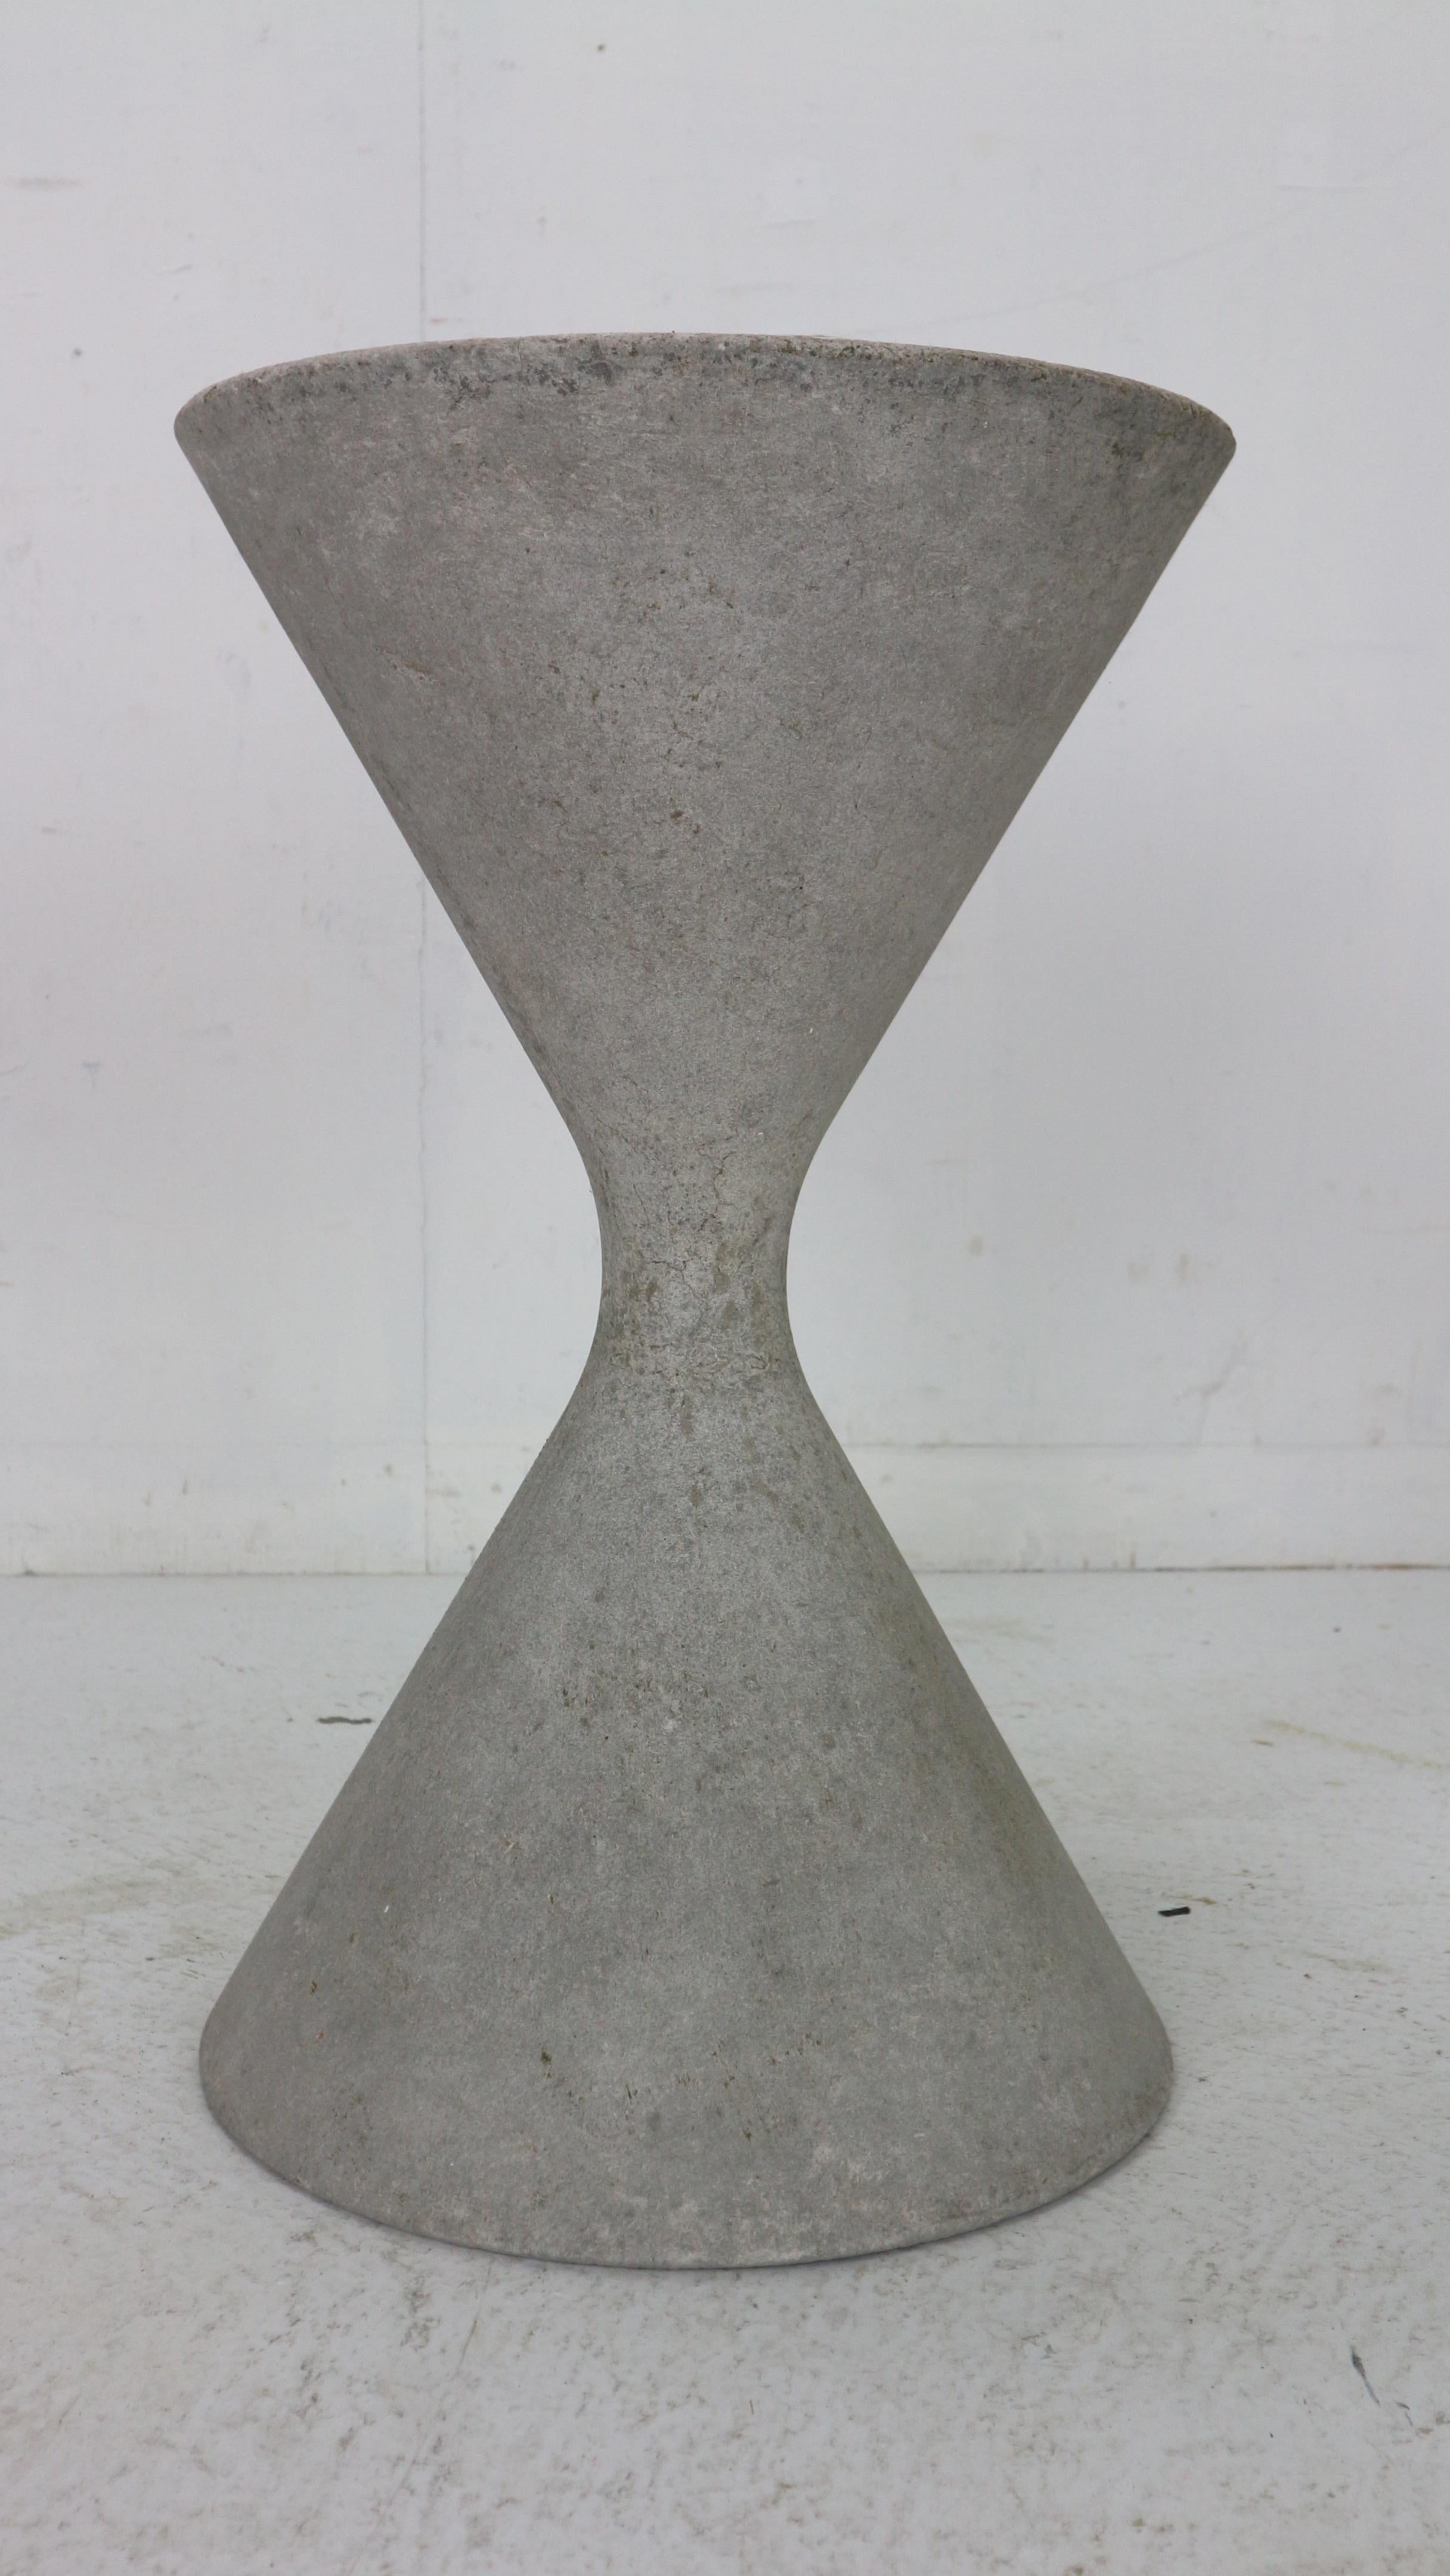 Cement Willy Guhl 'Diablo' Spindel Hourglass Concrete Planter, Switzerland, 1954